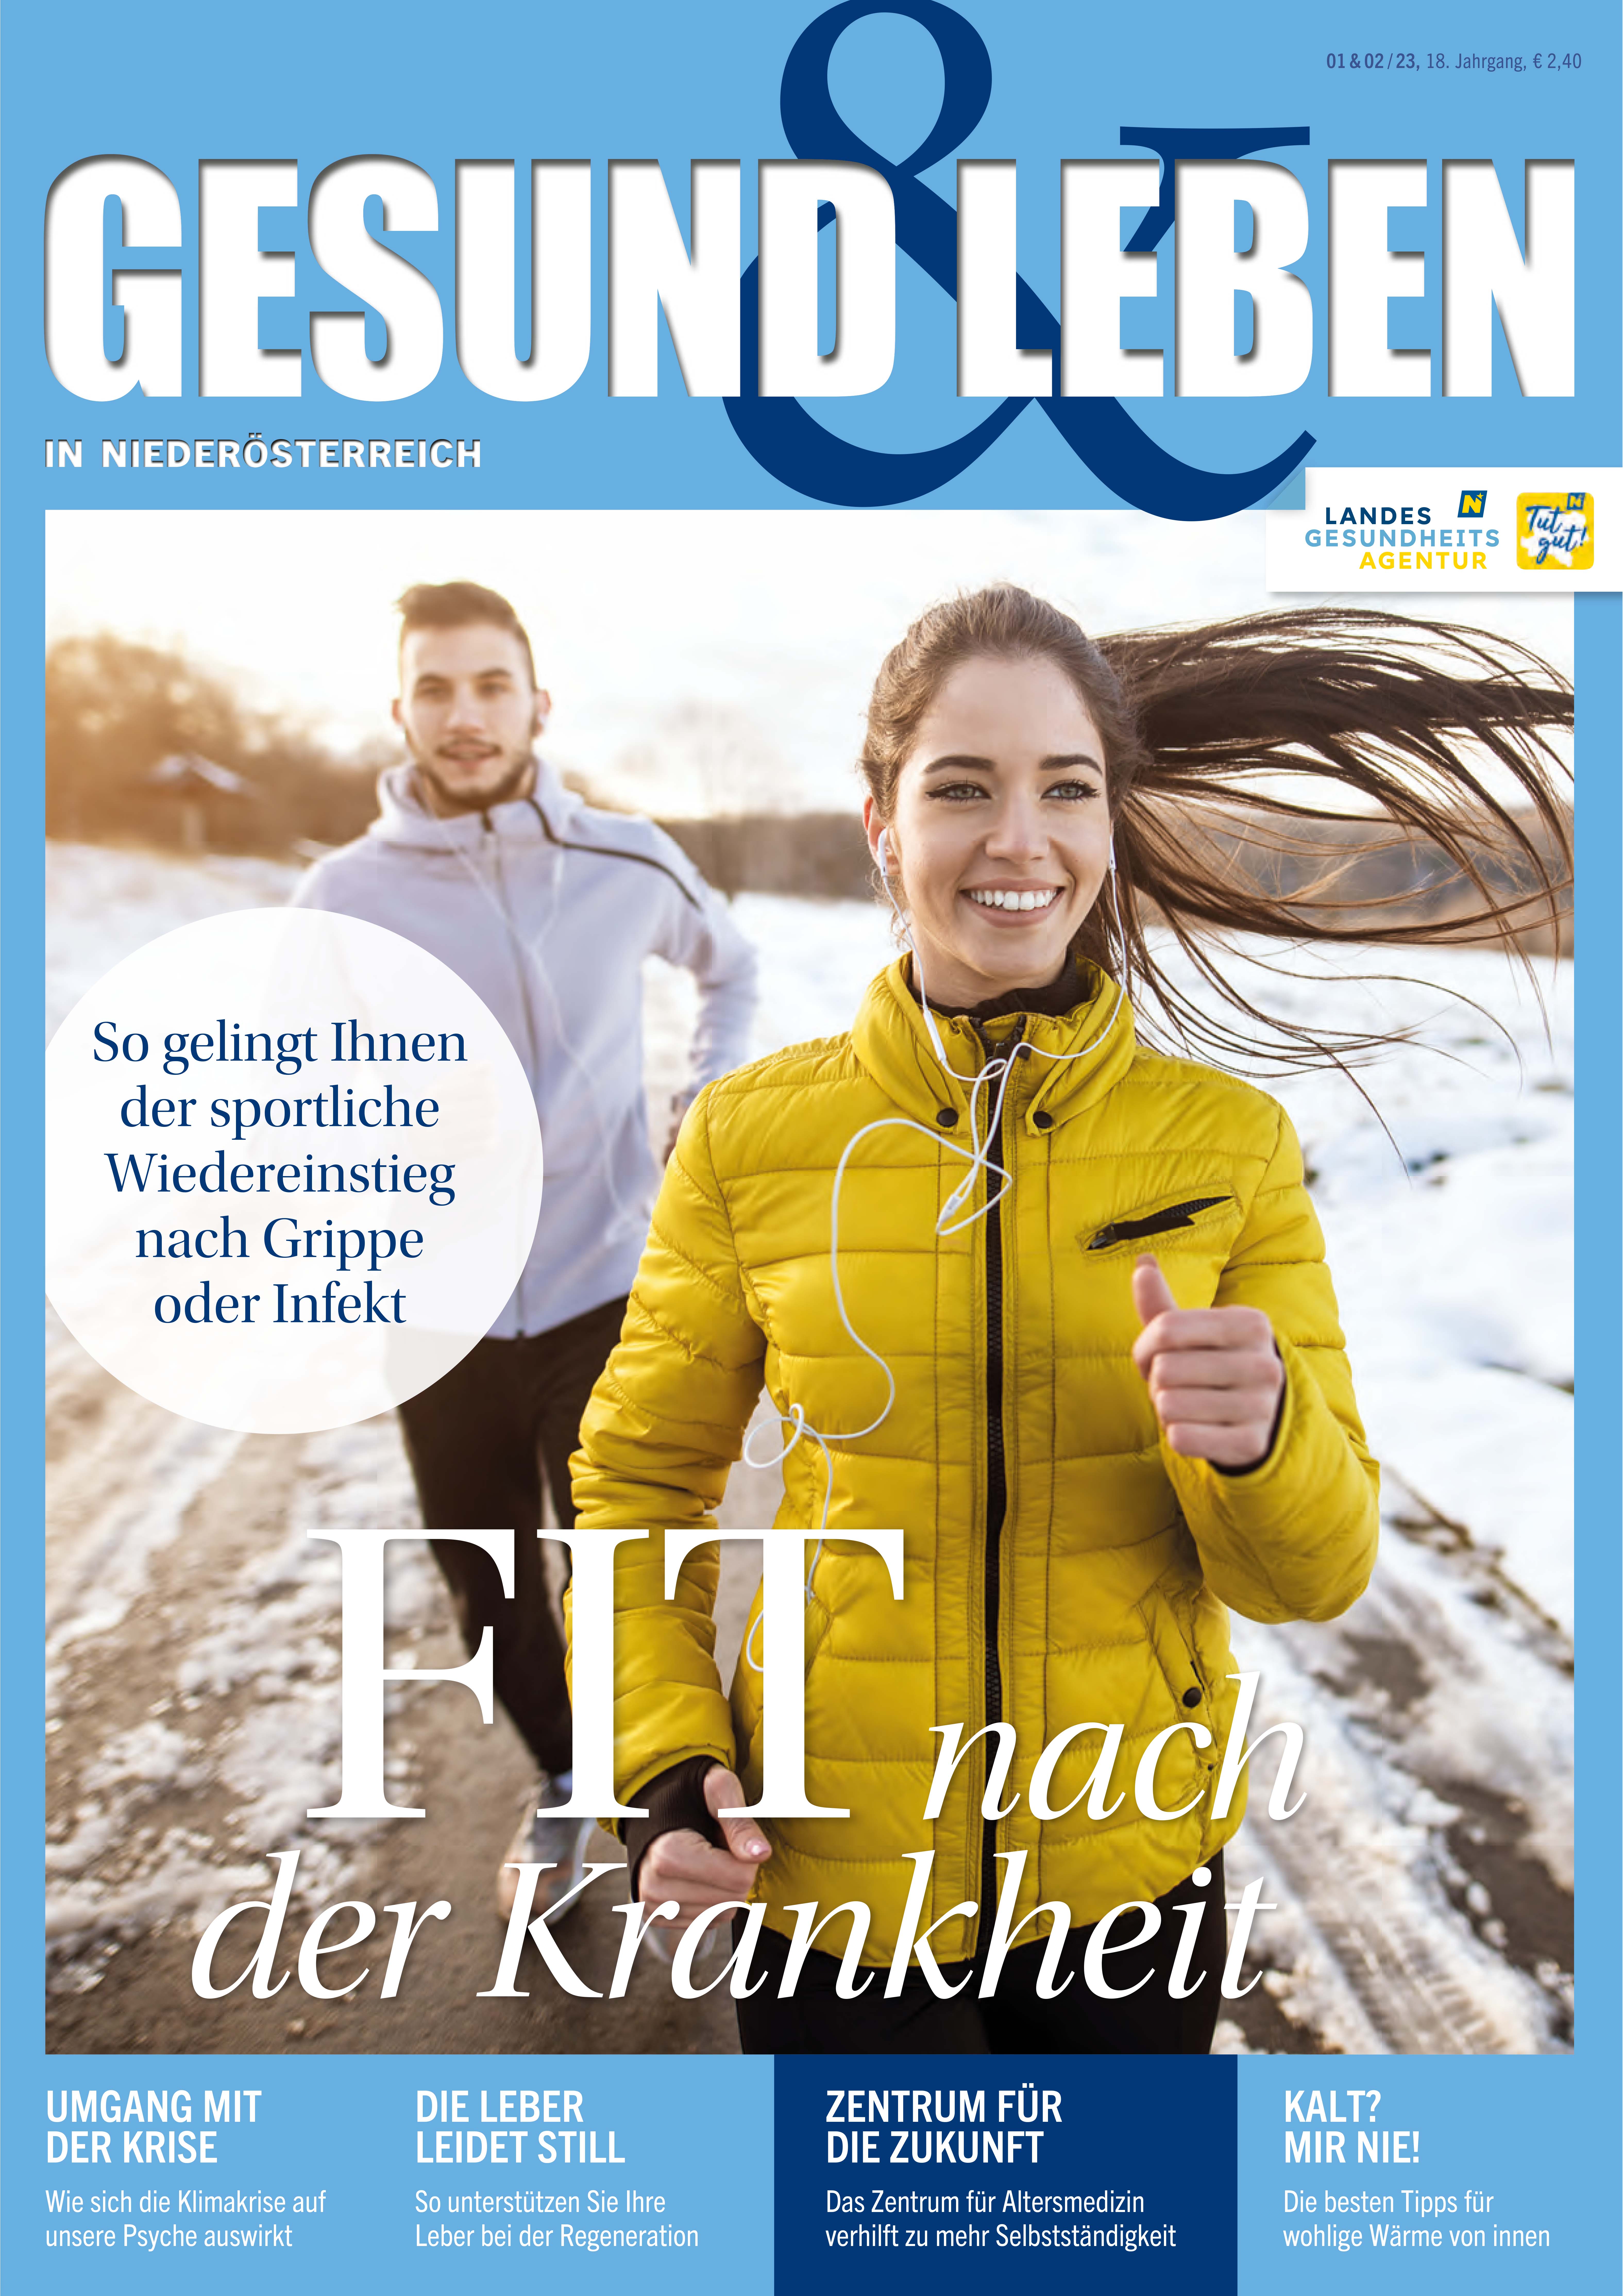 Coverstory unseres Magazins "Gesund & Leben": Wieder fit werden nach einer Krankheit